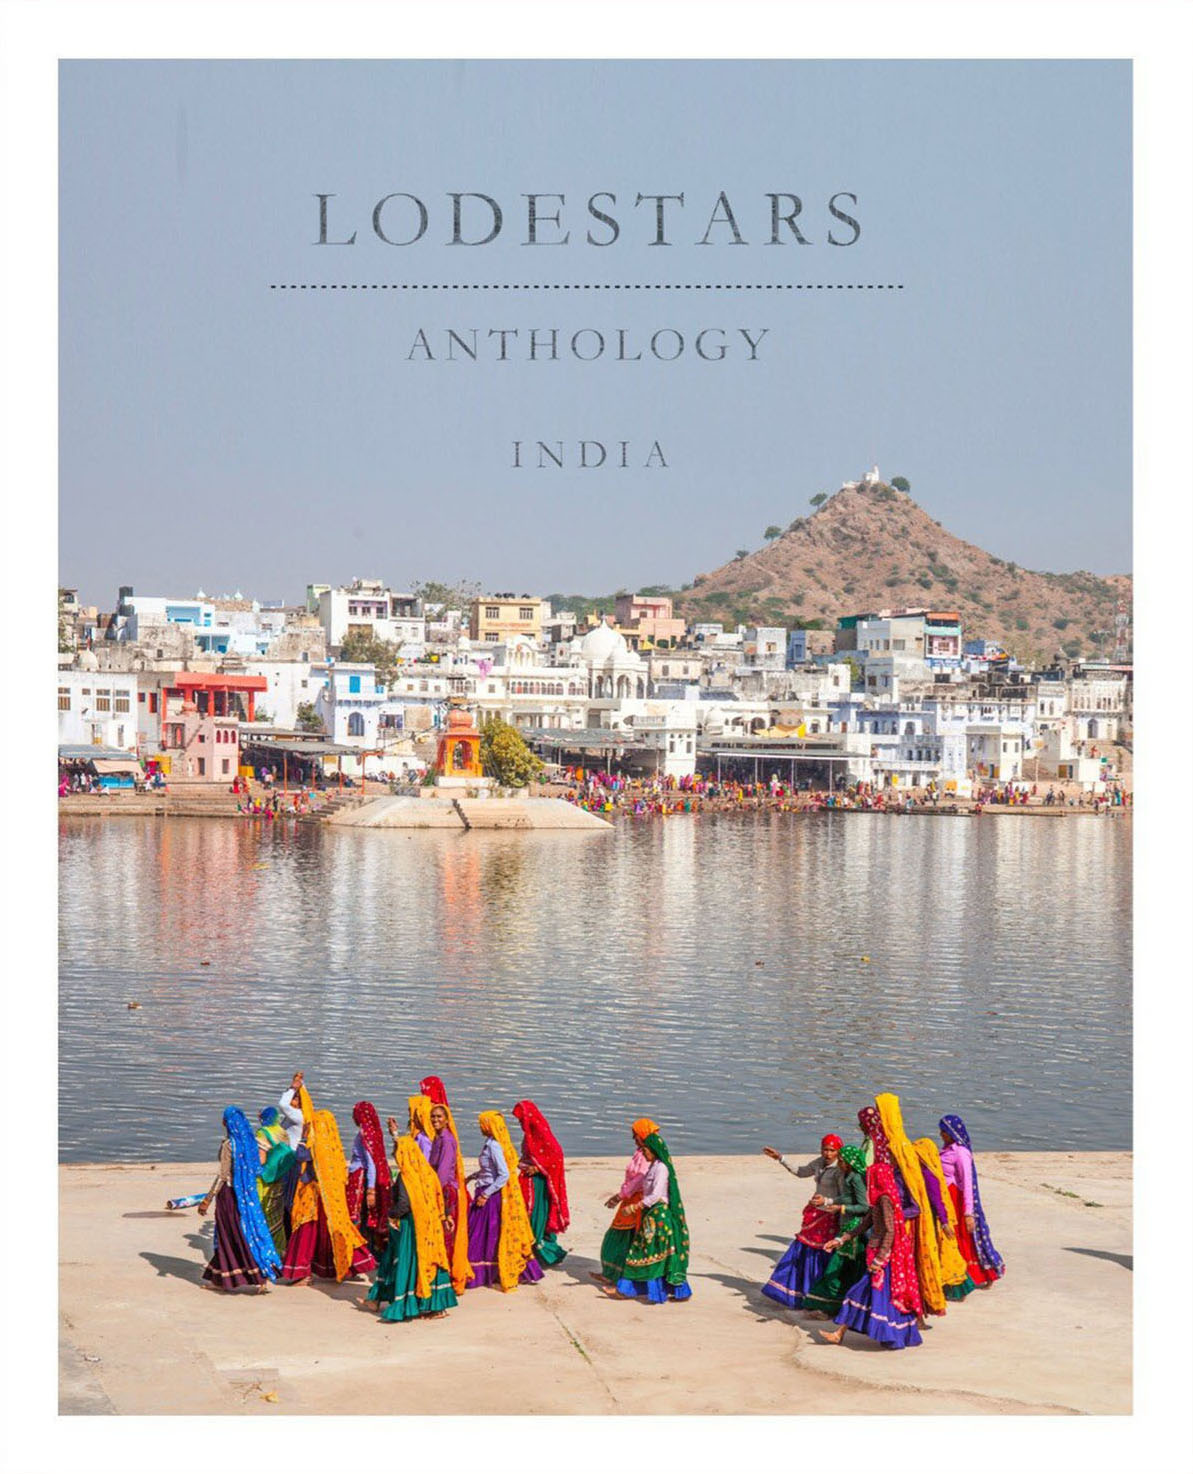 Karan Kumar Sachdev-Lodestar Anthology 1.jpg